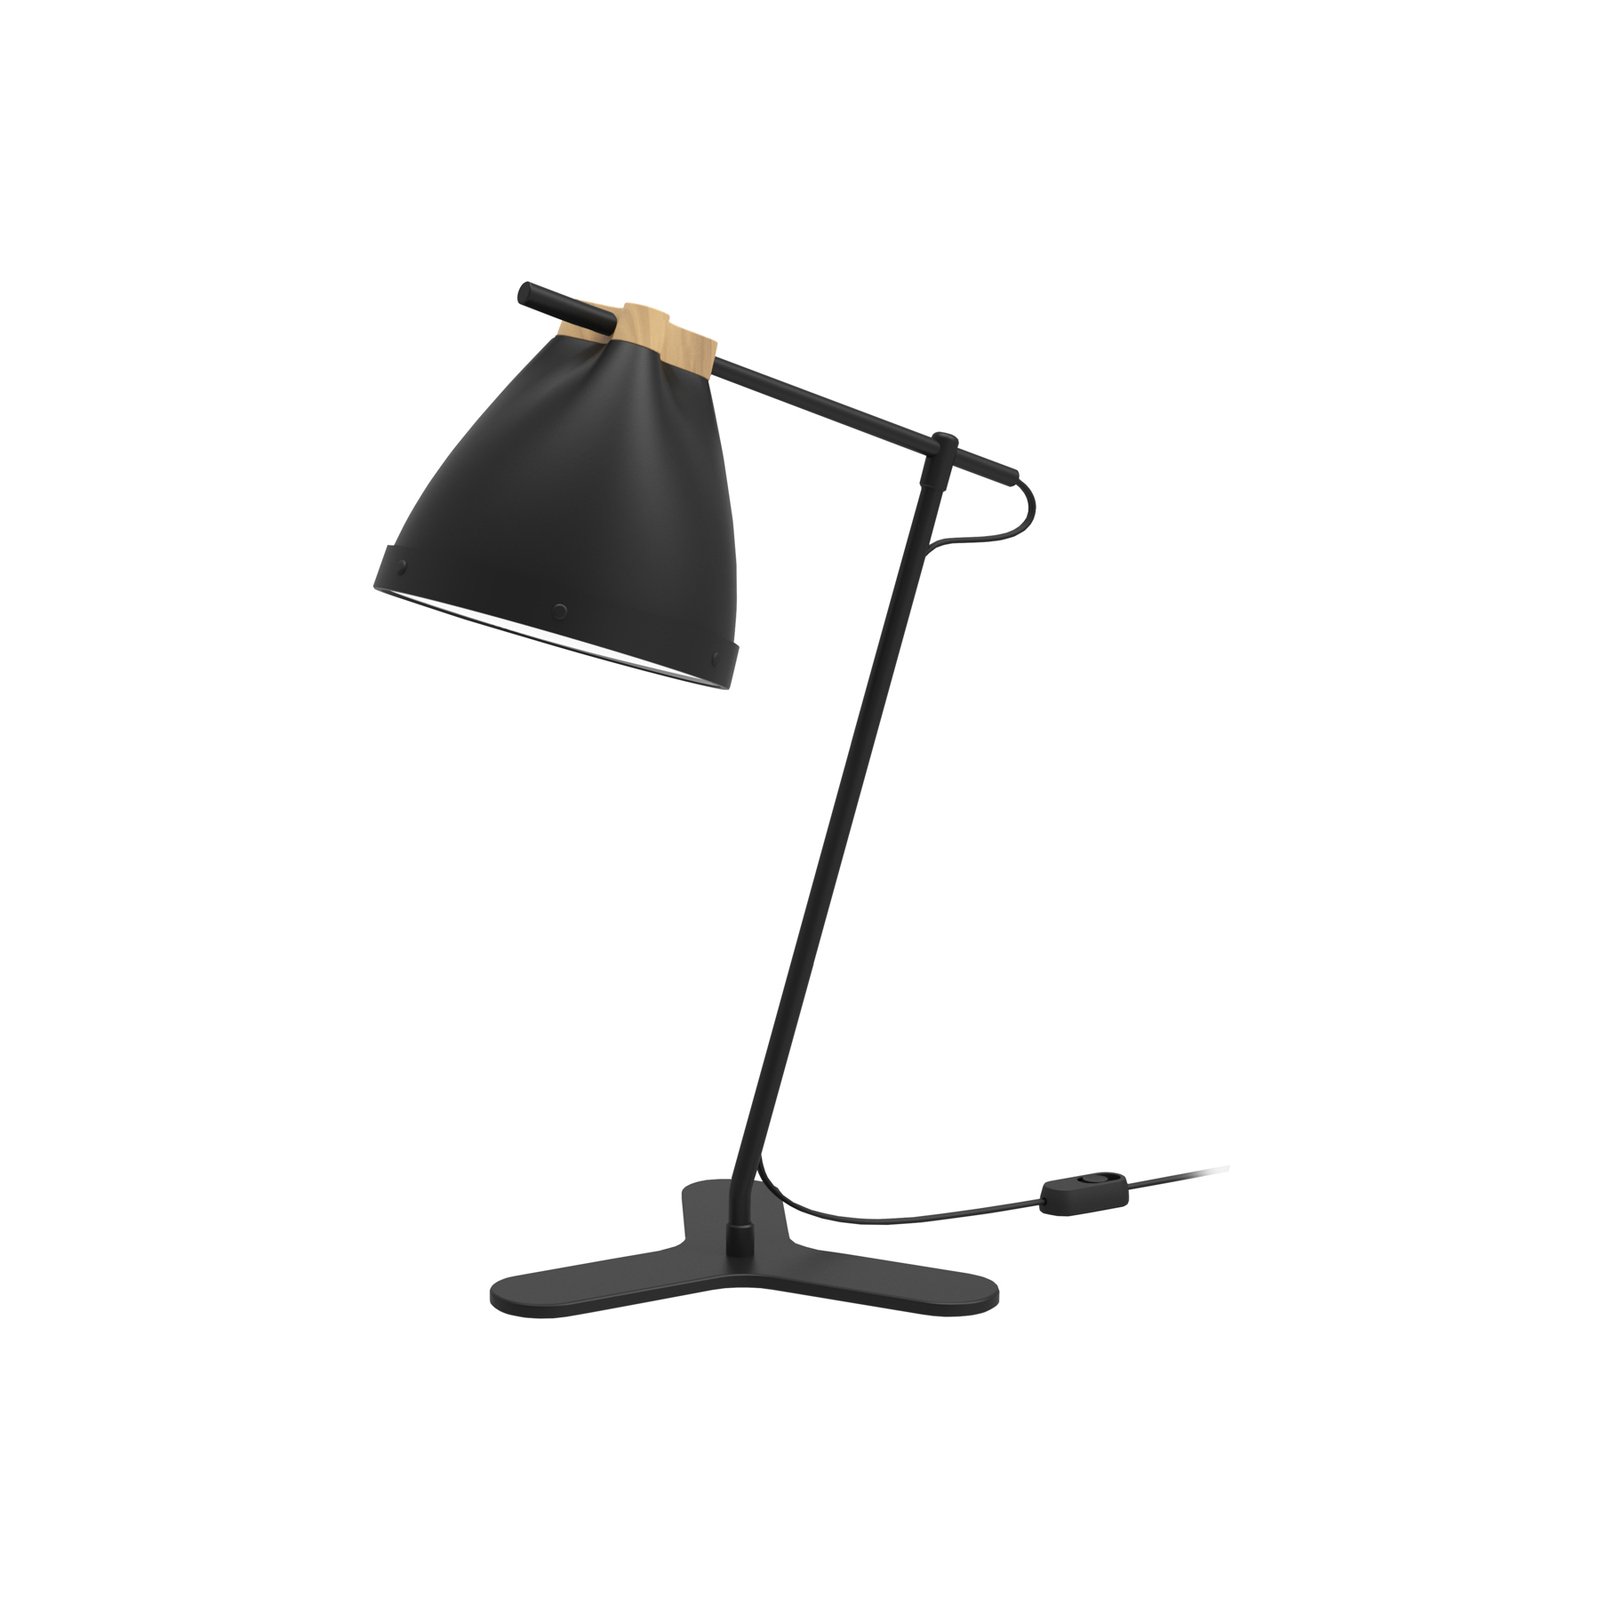 Aluminor Clarelle bordslampa, svart